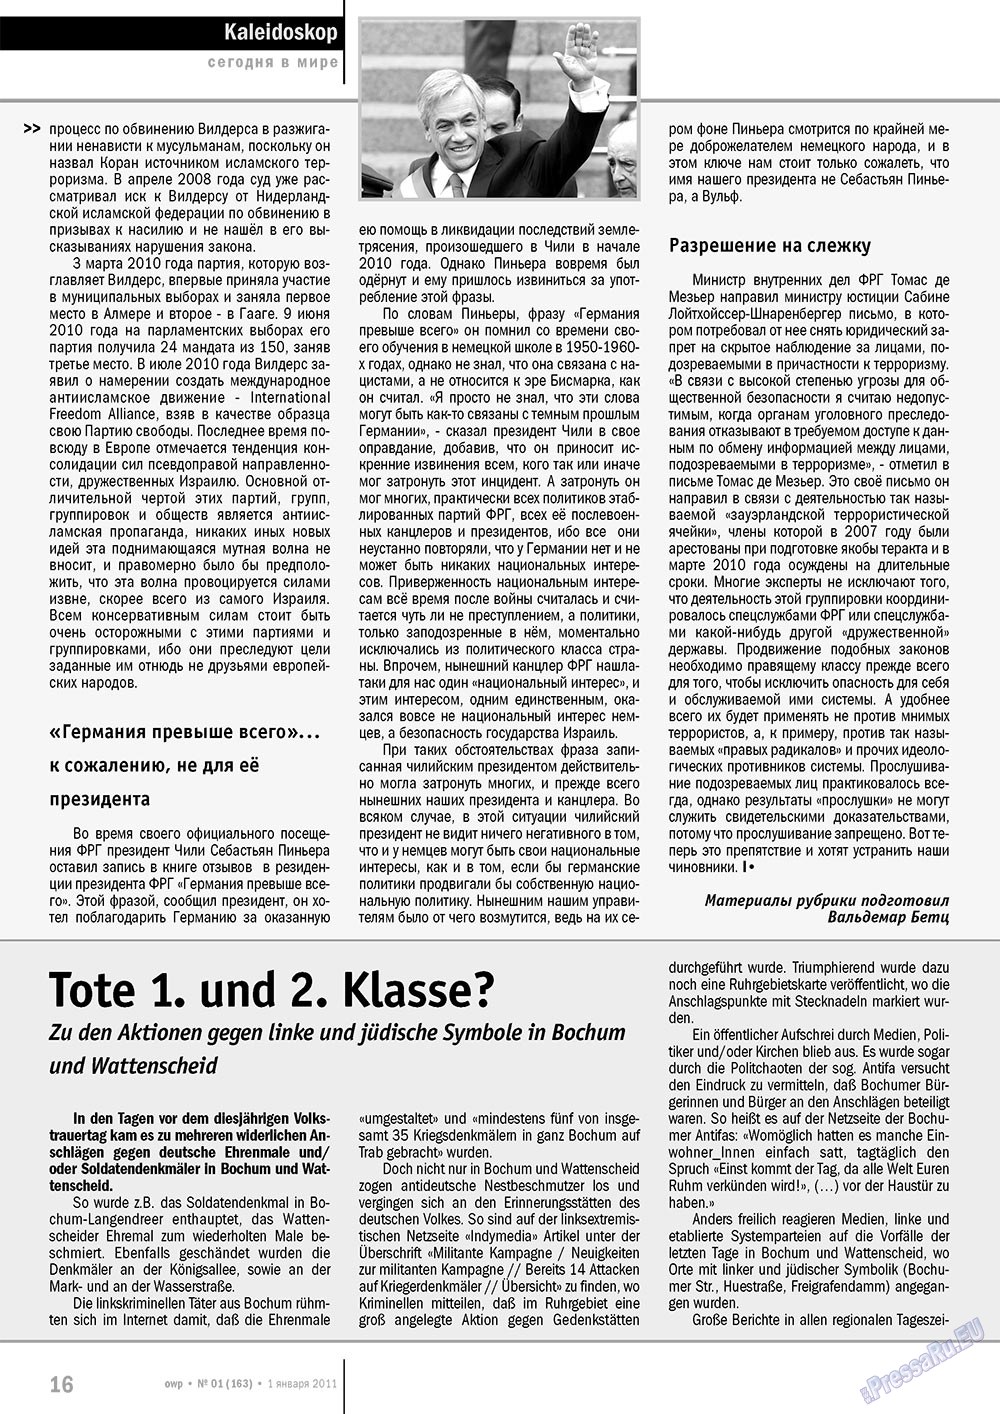 Ost-West Panorama (журнал). 2011 год, номер 1, стр. 16